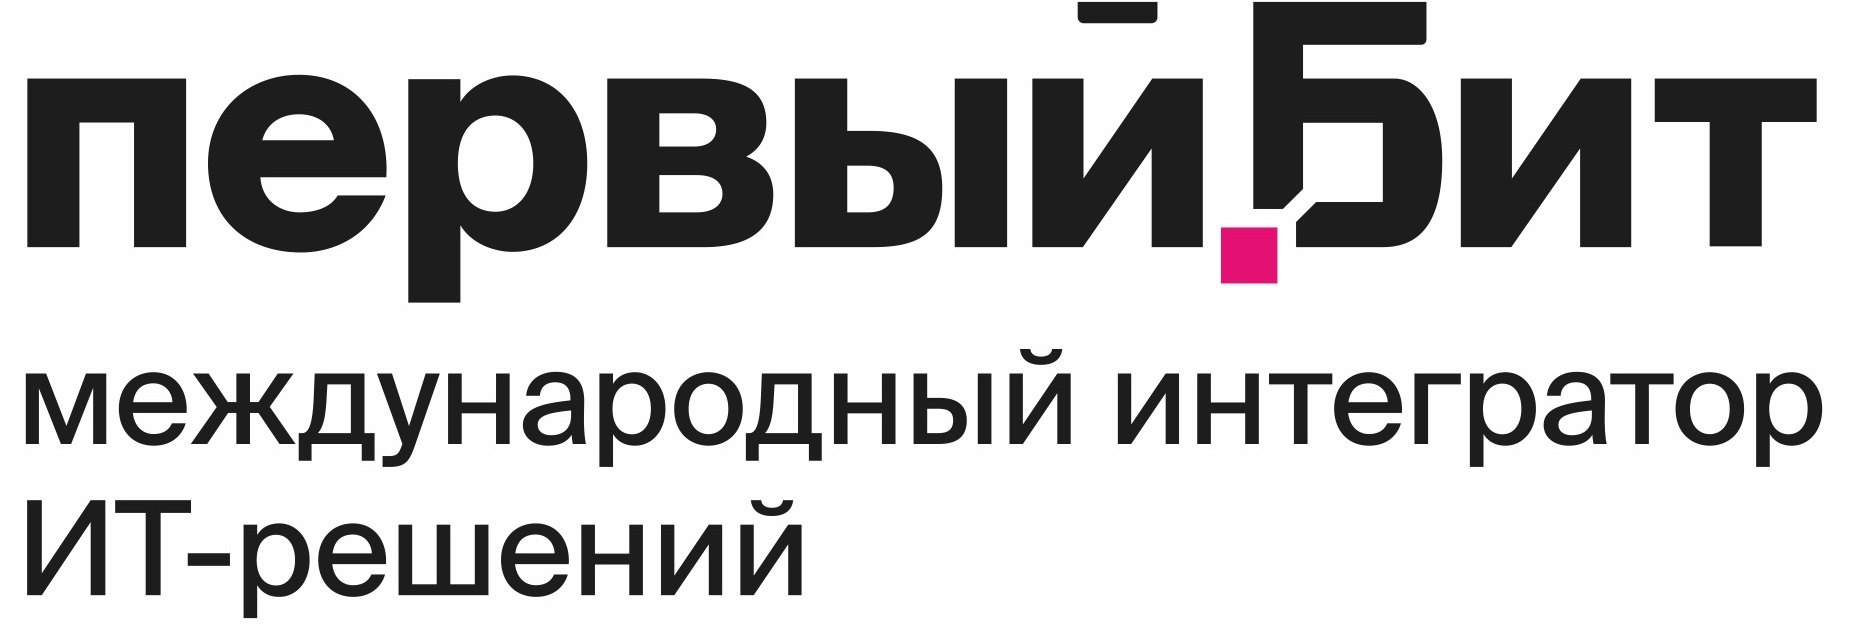 С 13 по 16 сентября 2022 г. в Минске пройдет Неделя складской логистики. 200+ участников 15